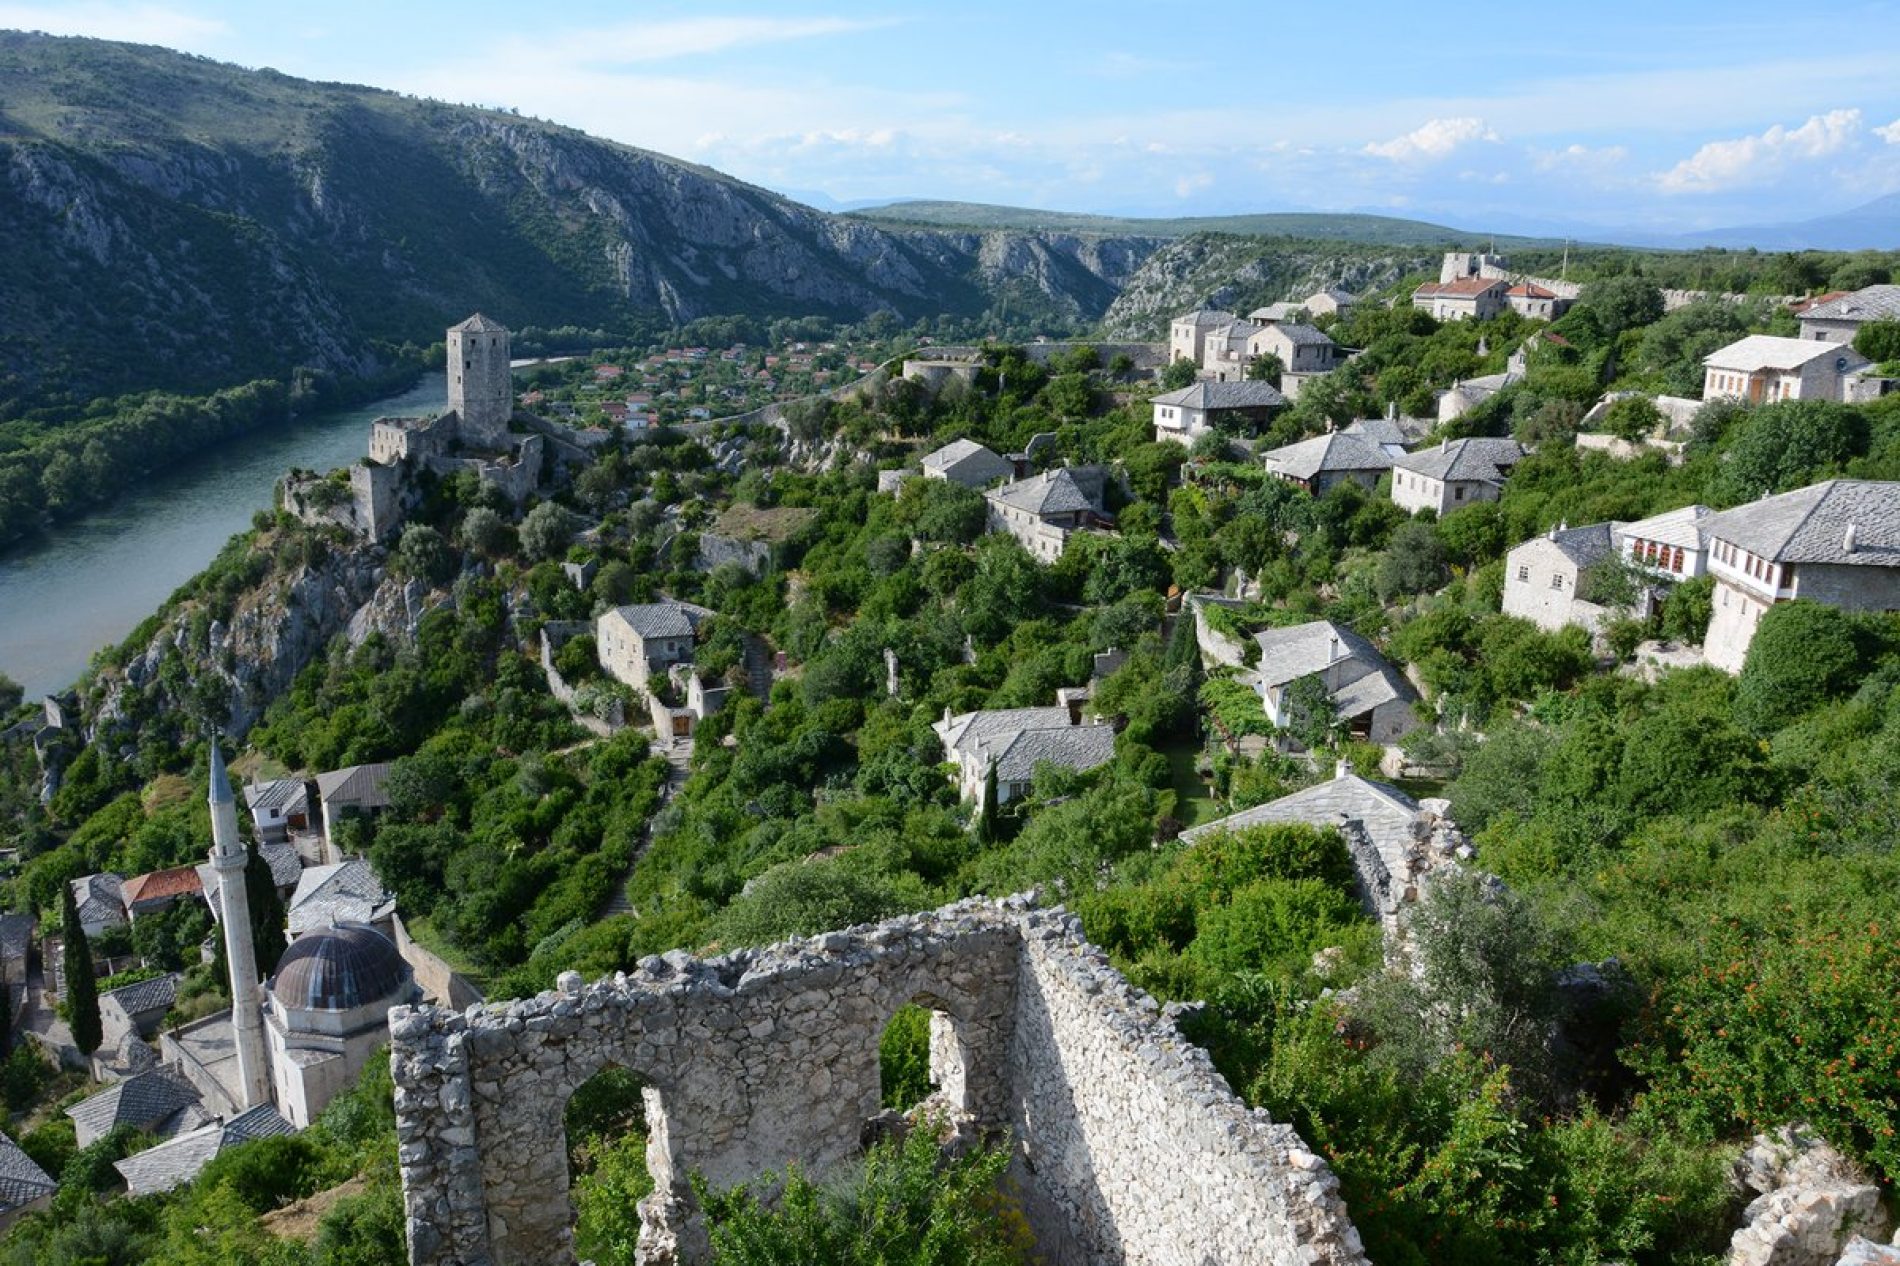 Srednjovjekovni bosanski gradić Počitelj oživljavaju posjetioci iz raznih dijelova svijeta